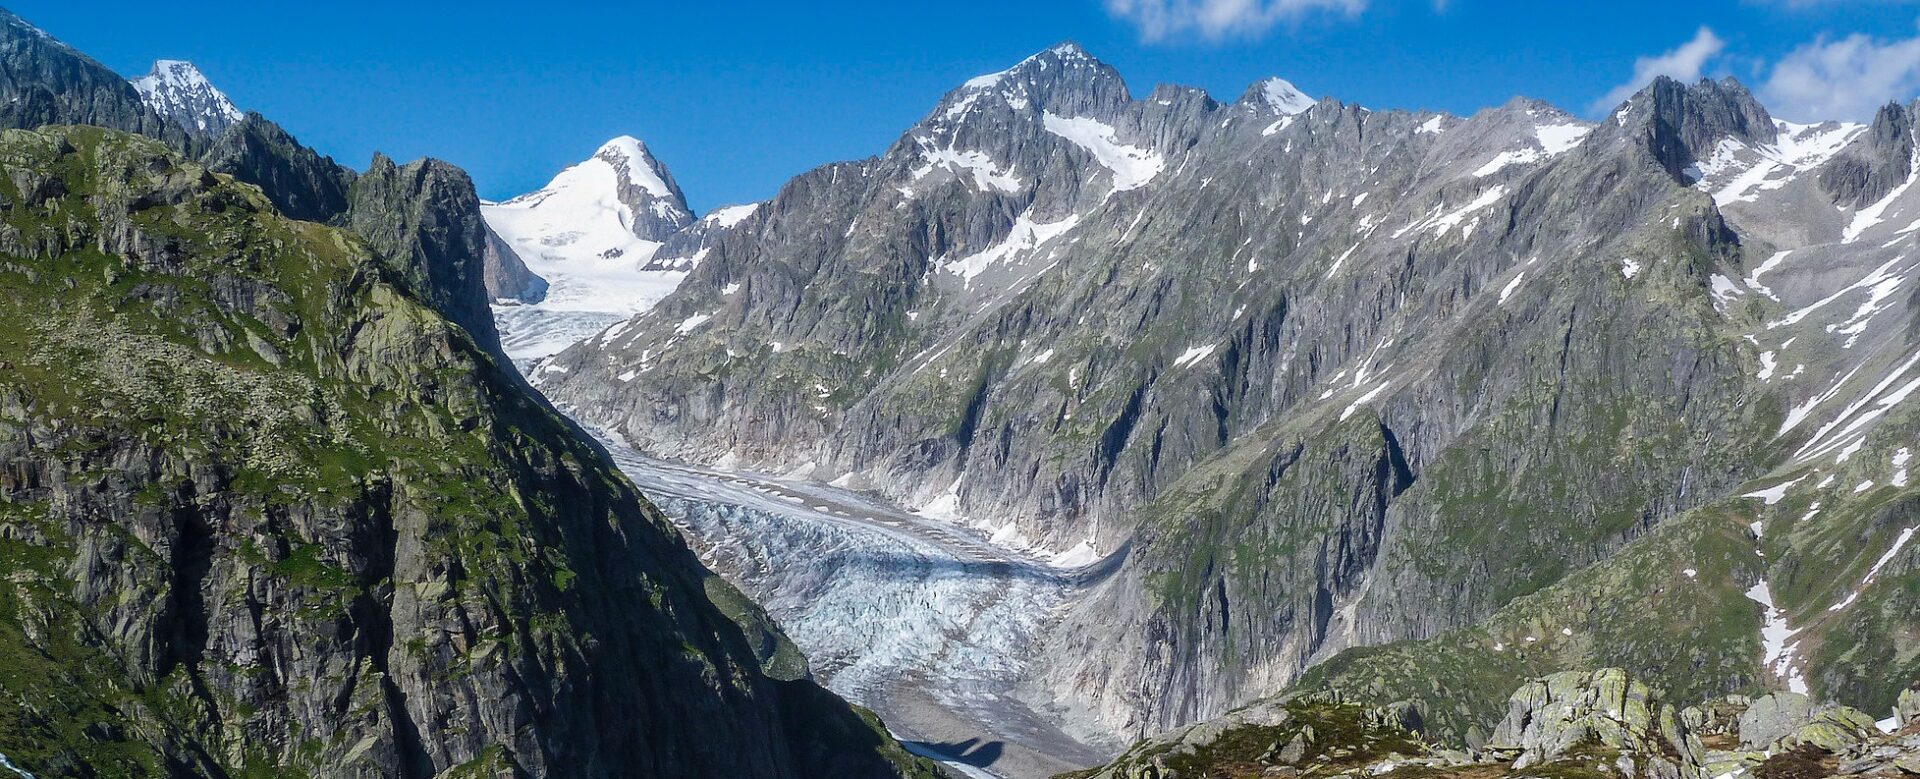 En Suisse, le réchauffement climatique a fait reculer les glaciers | photo: glacier d'Aletsch (BE) © Robert J Heath/Flickr/CC BY 2.0